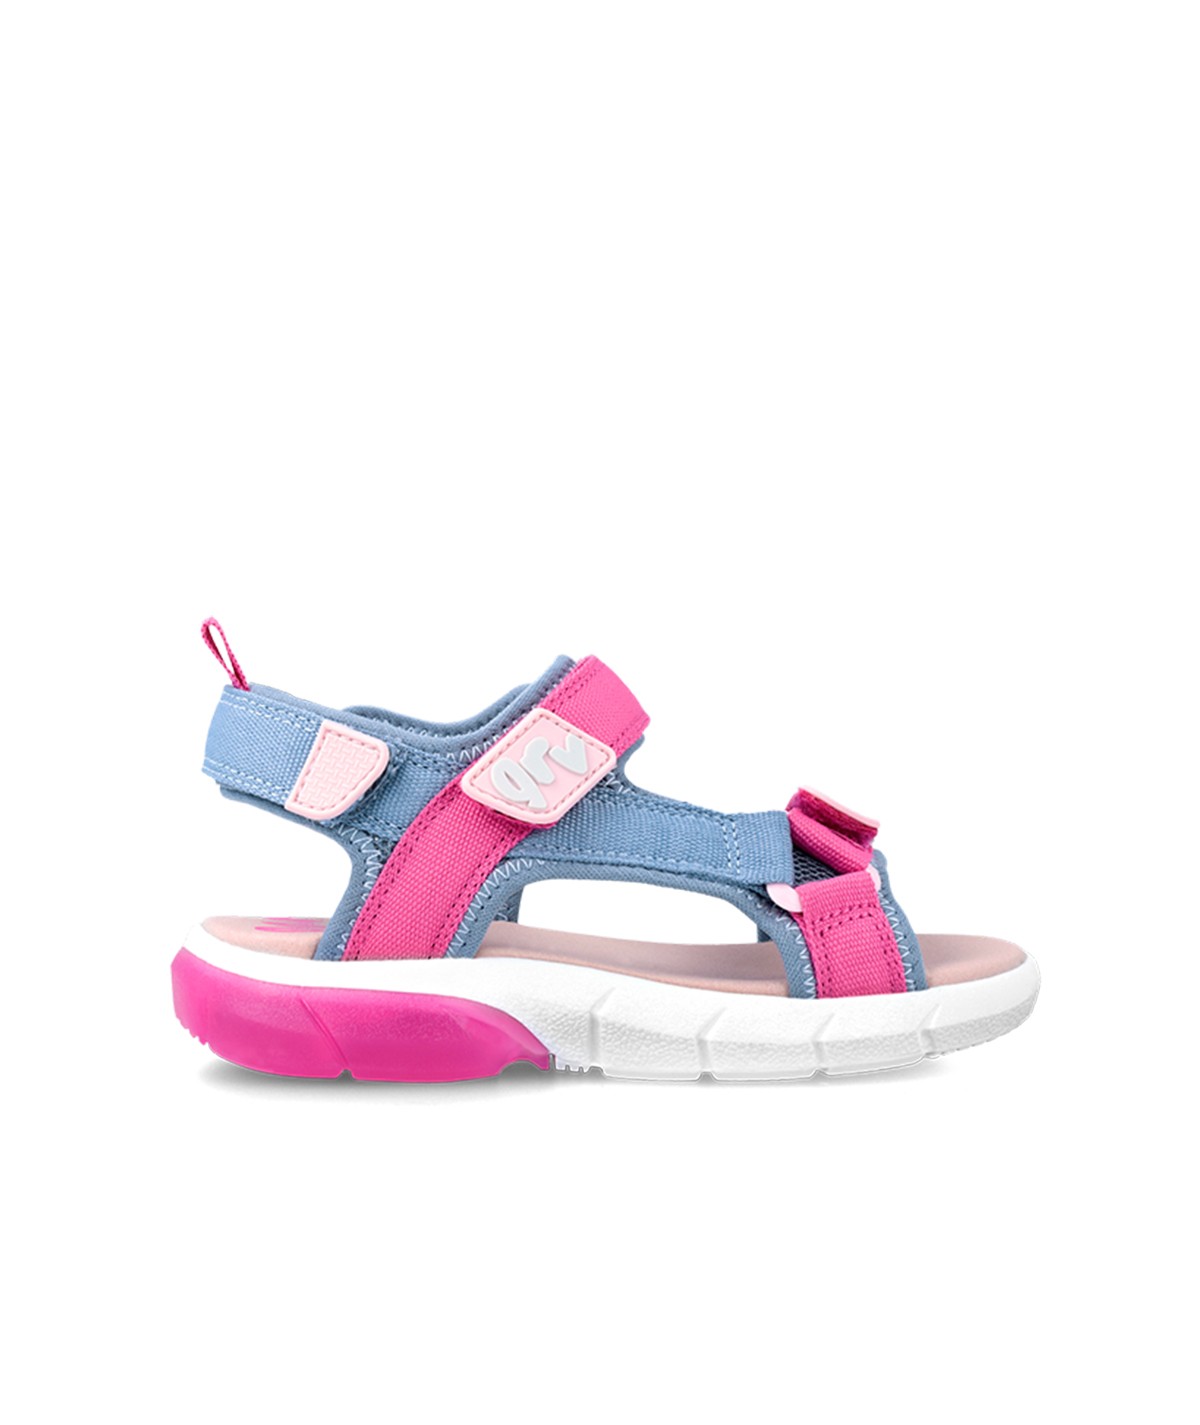 Sandale bleu clair et rose